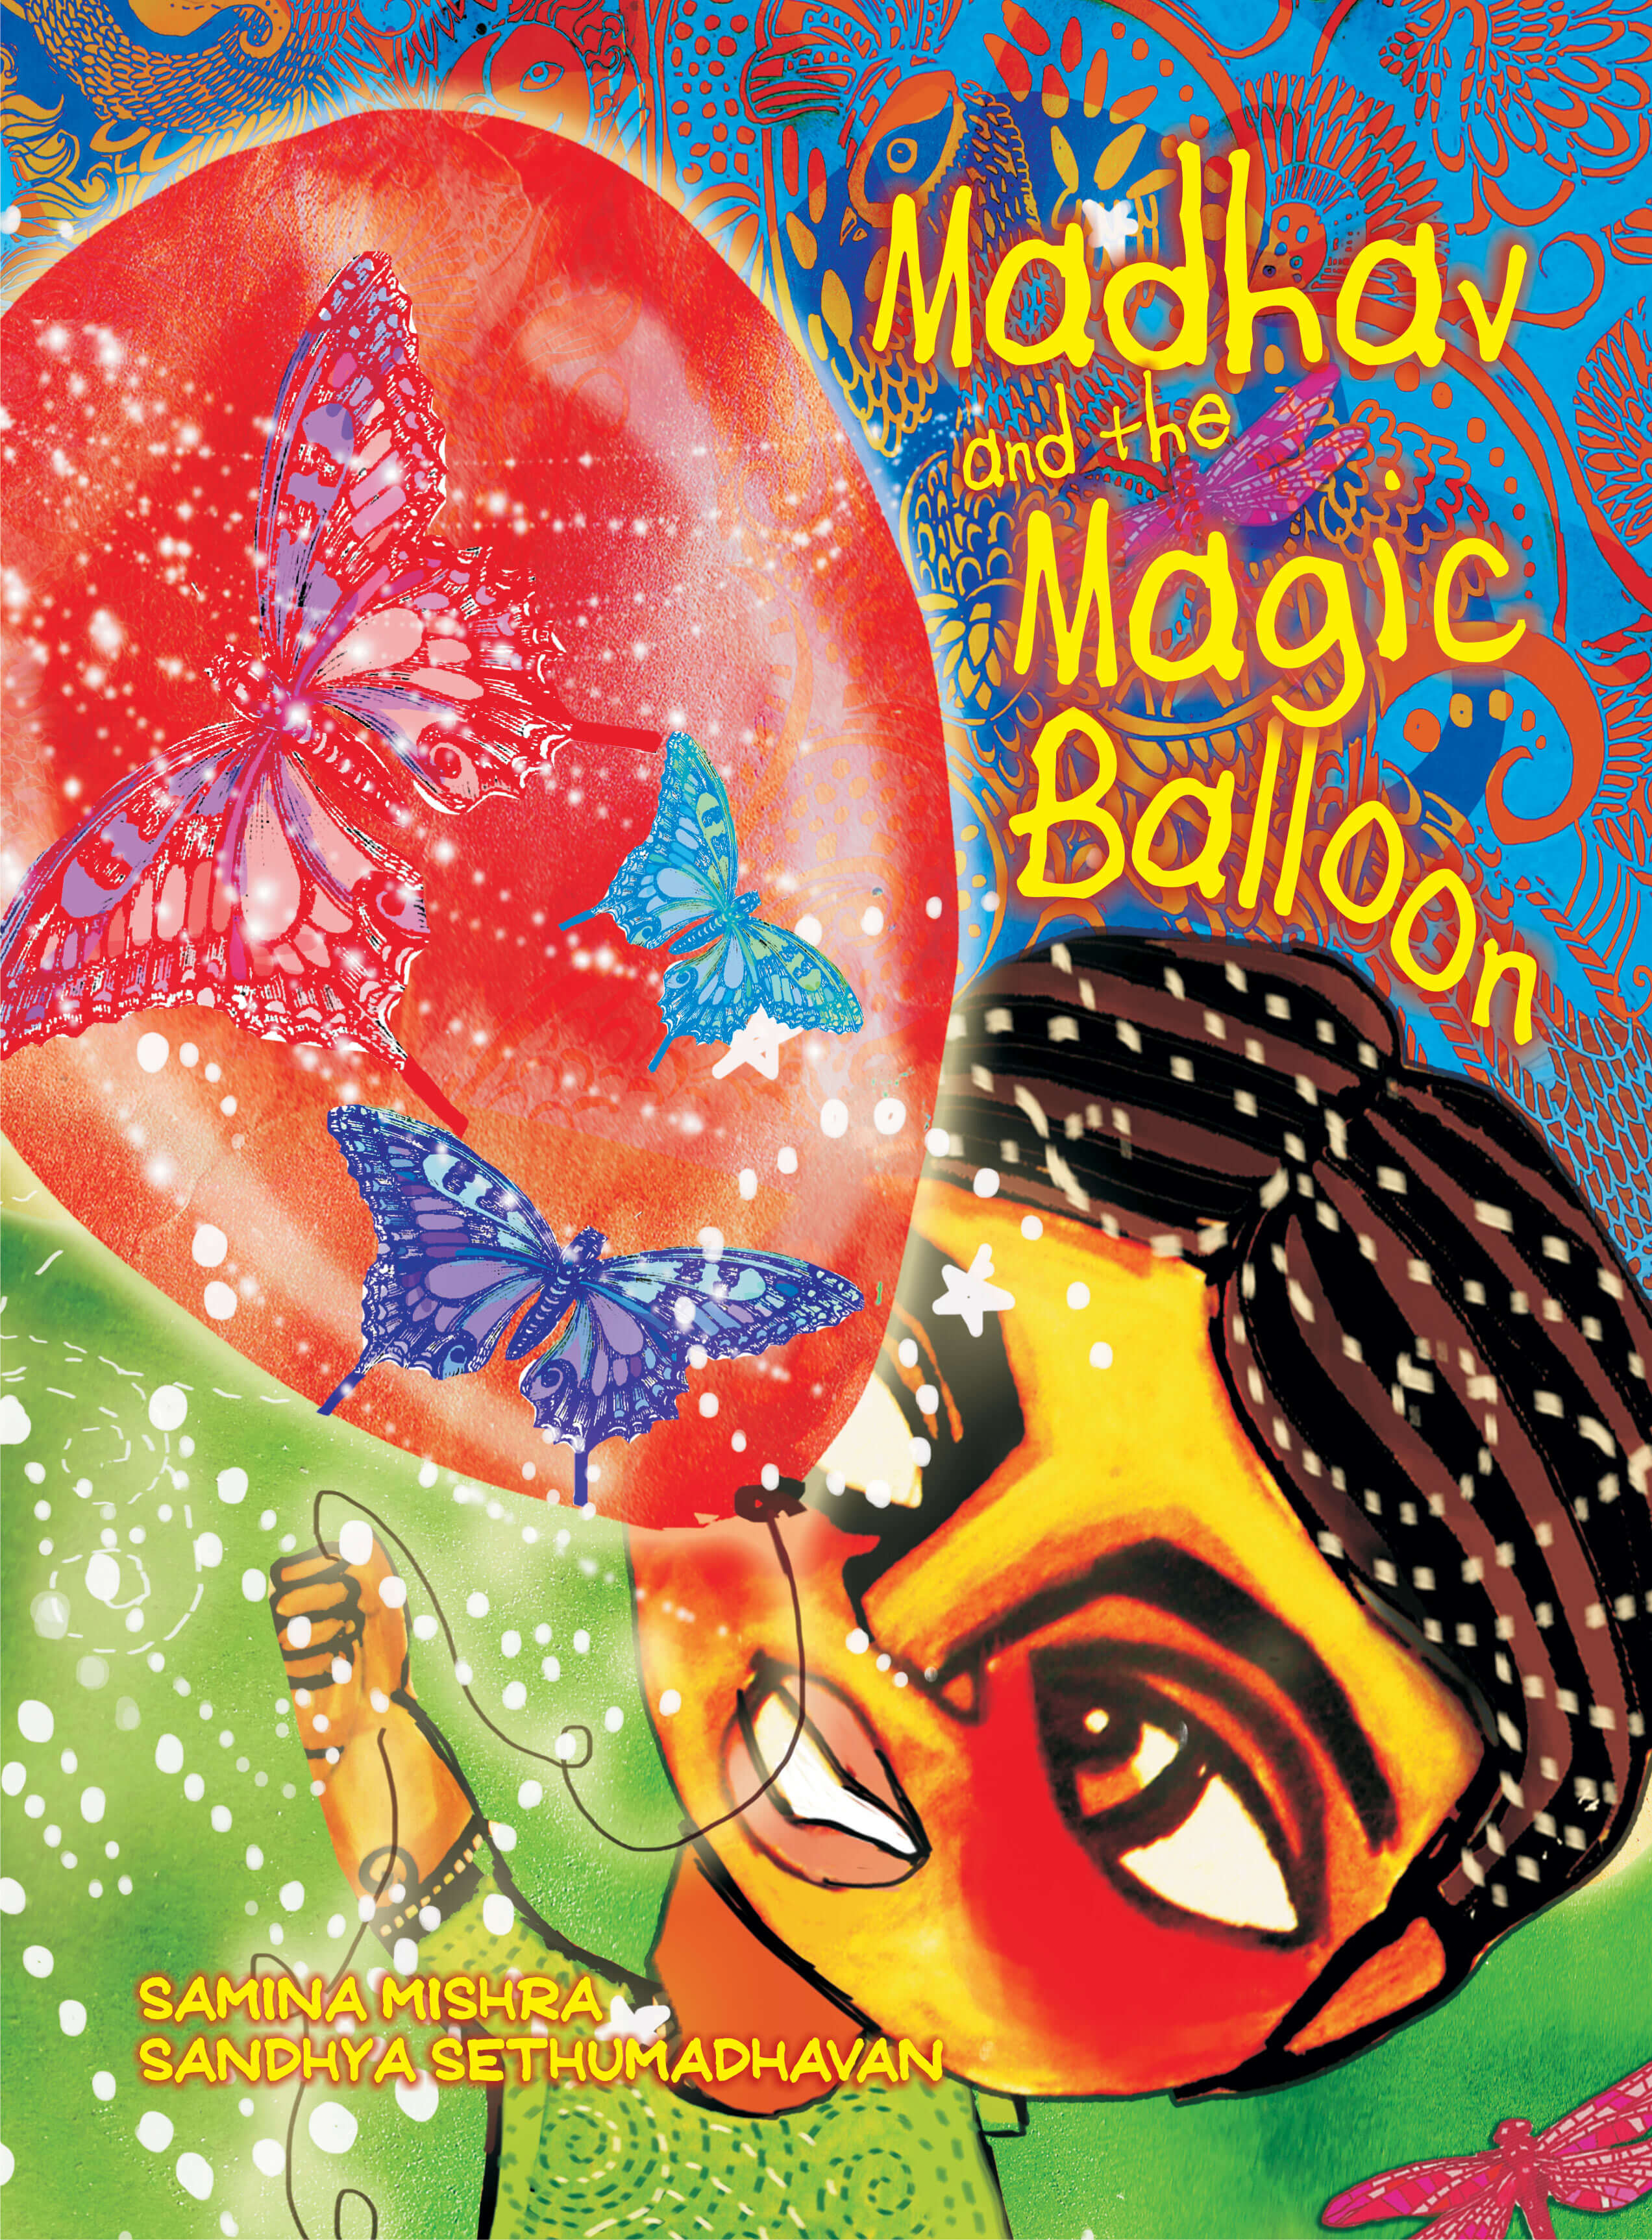 Madhav And The Magic Balloon